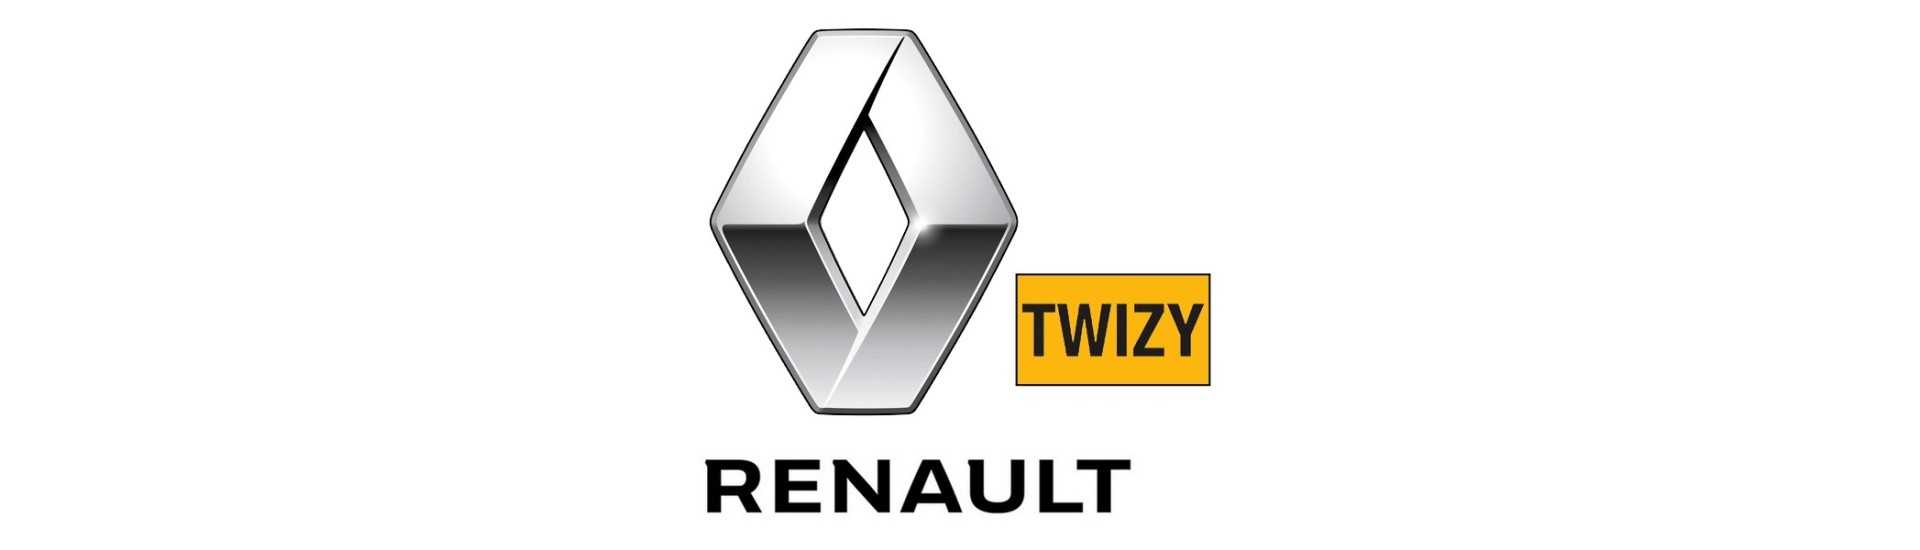 Roterande sensor till bästa pris utan tillstånd Renault Twizy